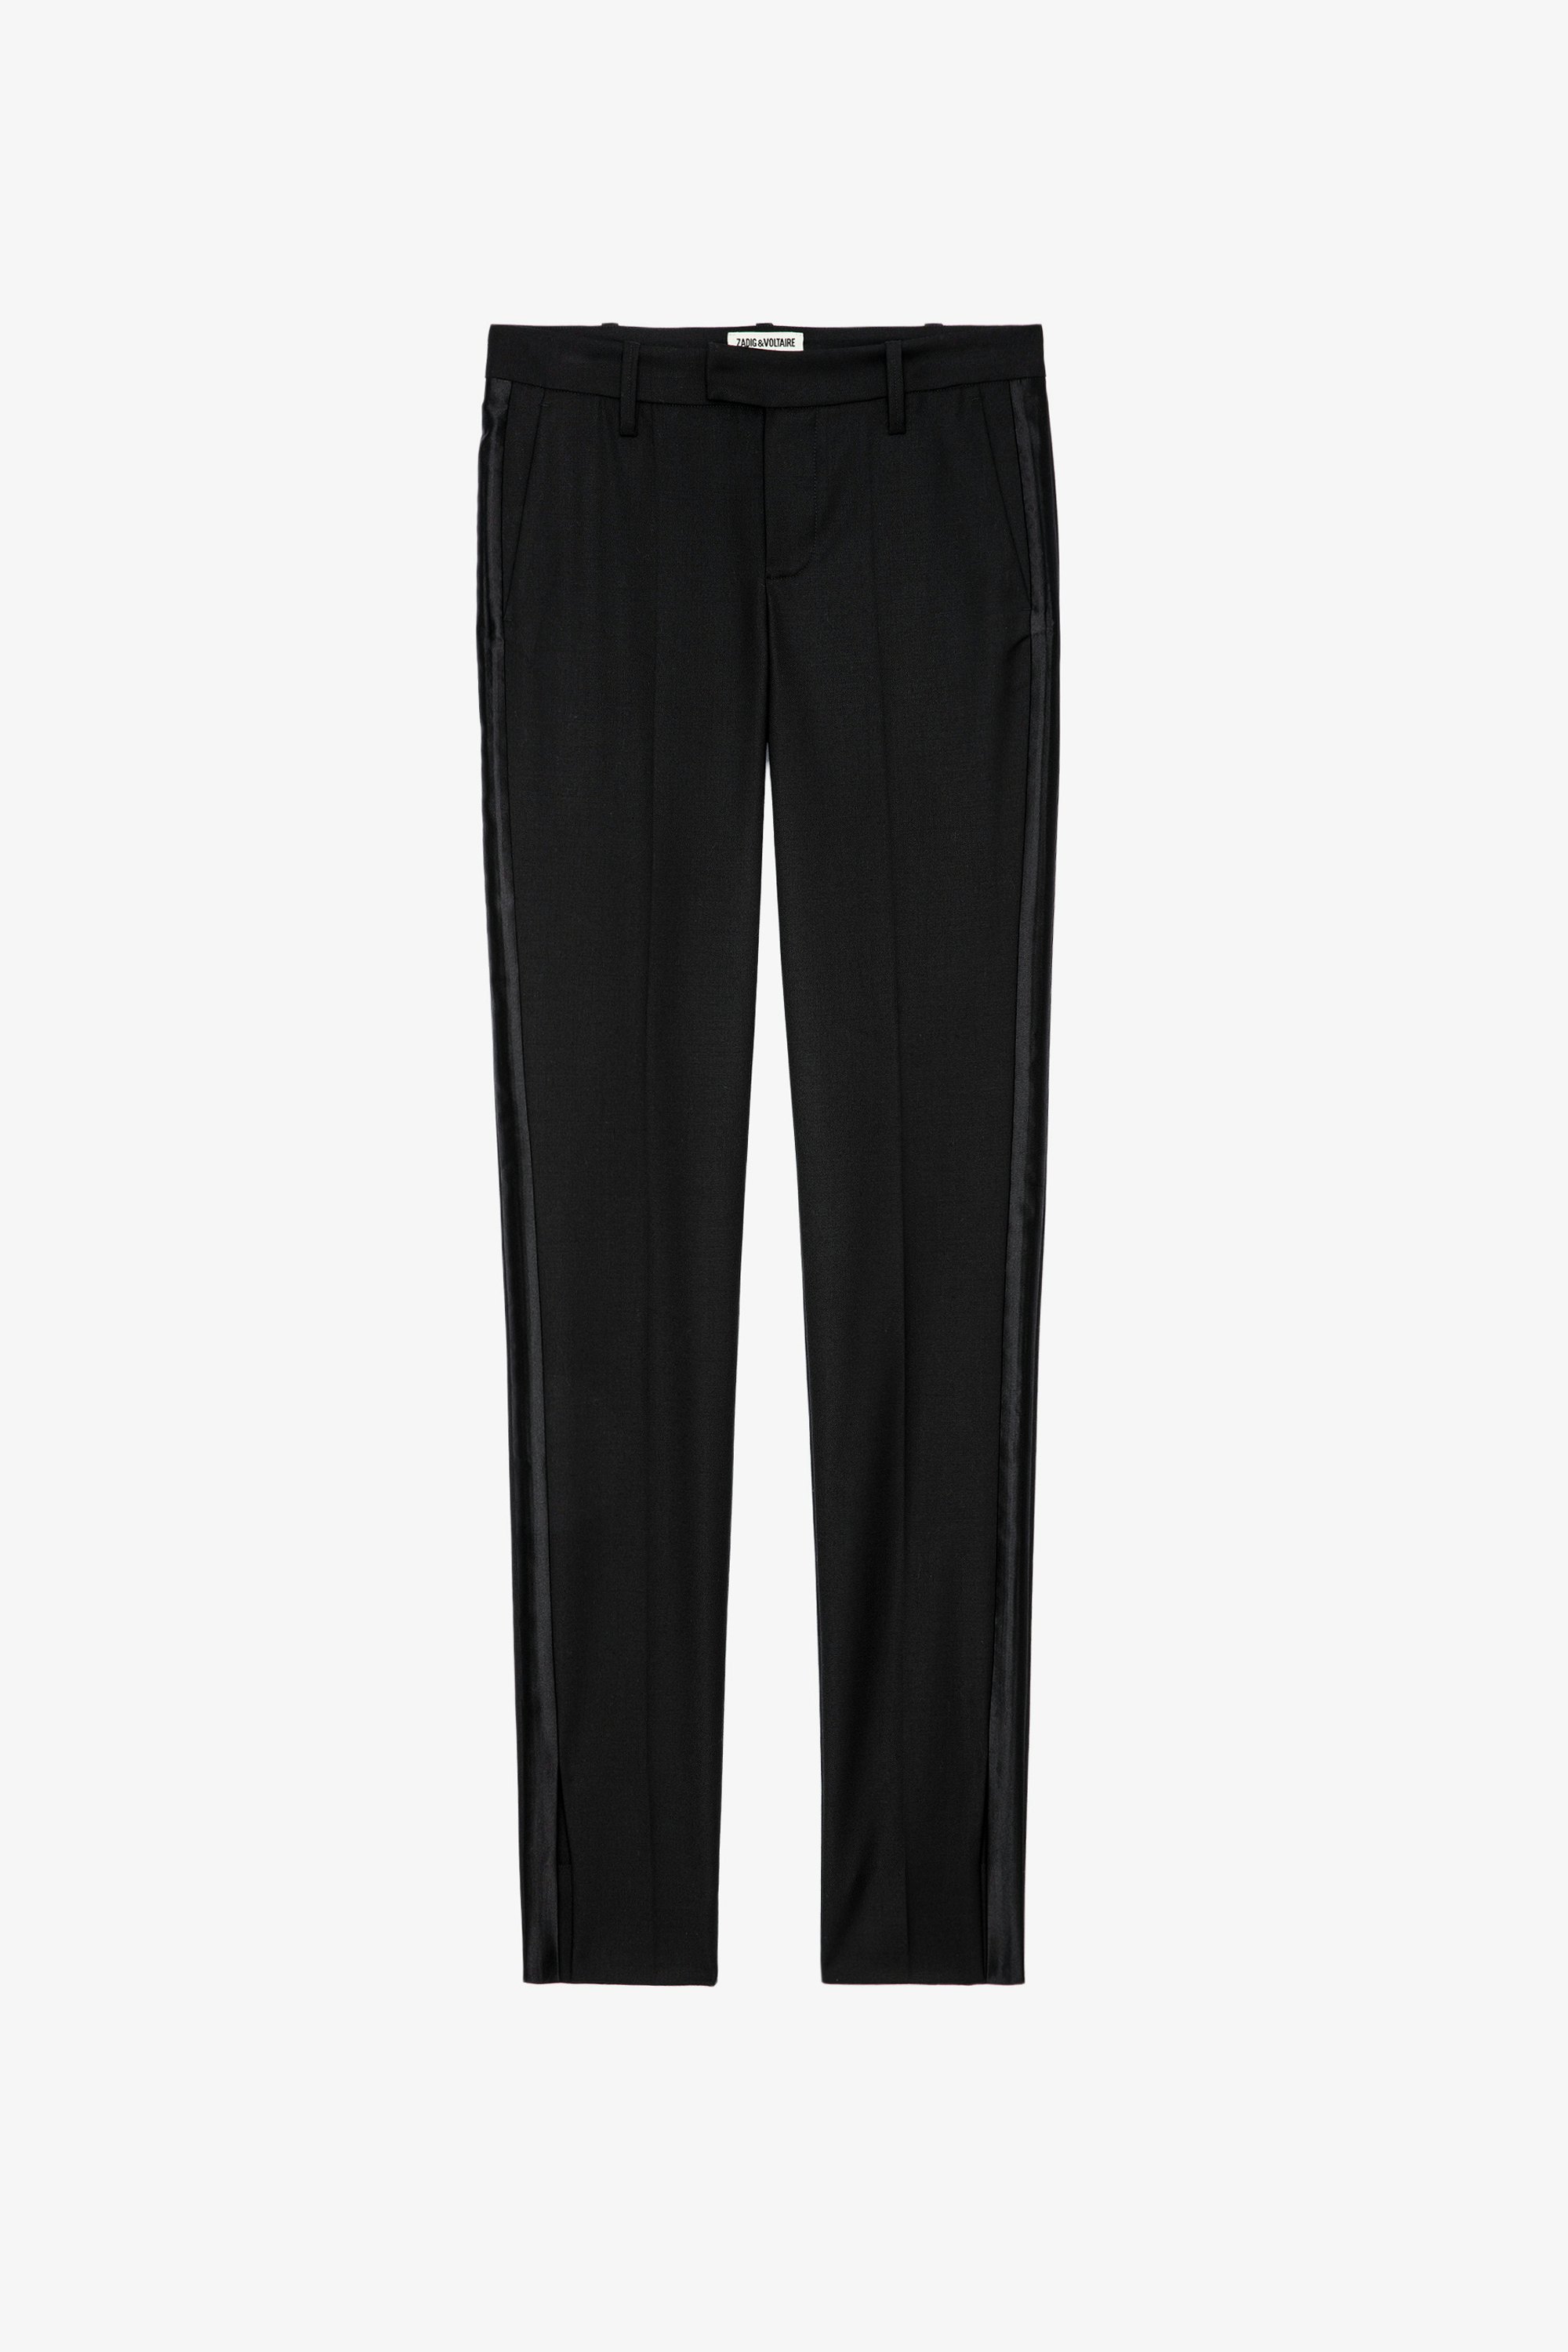 Pantalon Prune - Pantalon de tailleur noir à ourlets fendus.